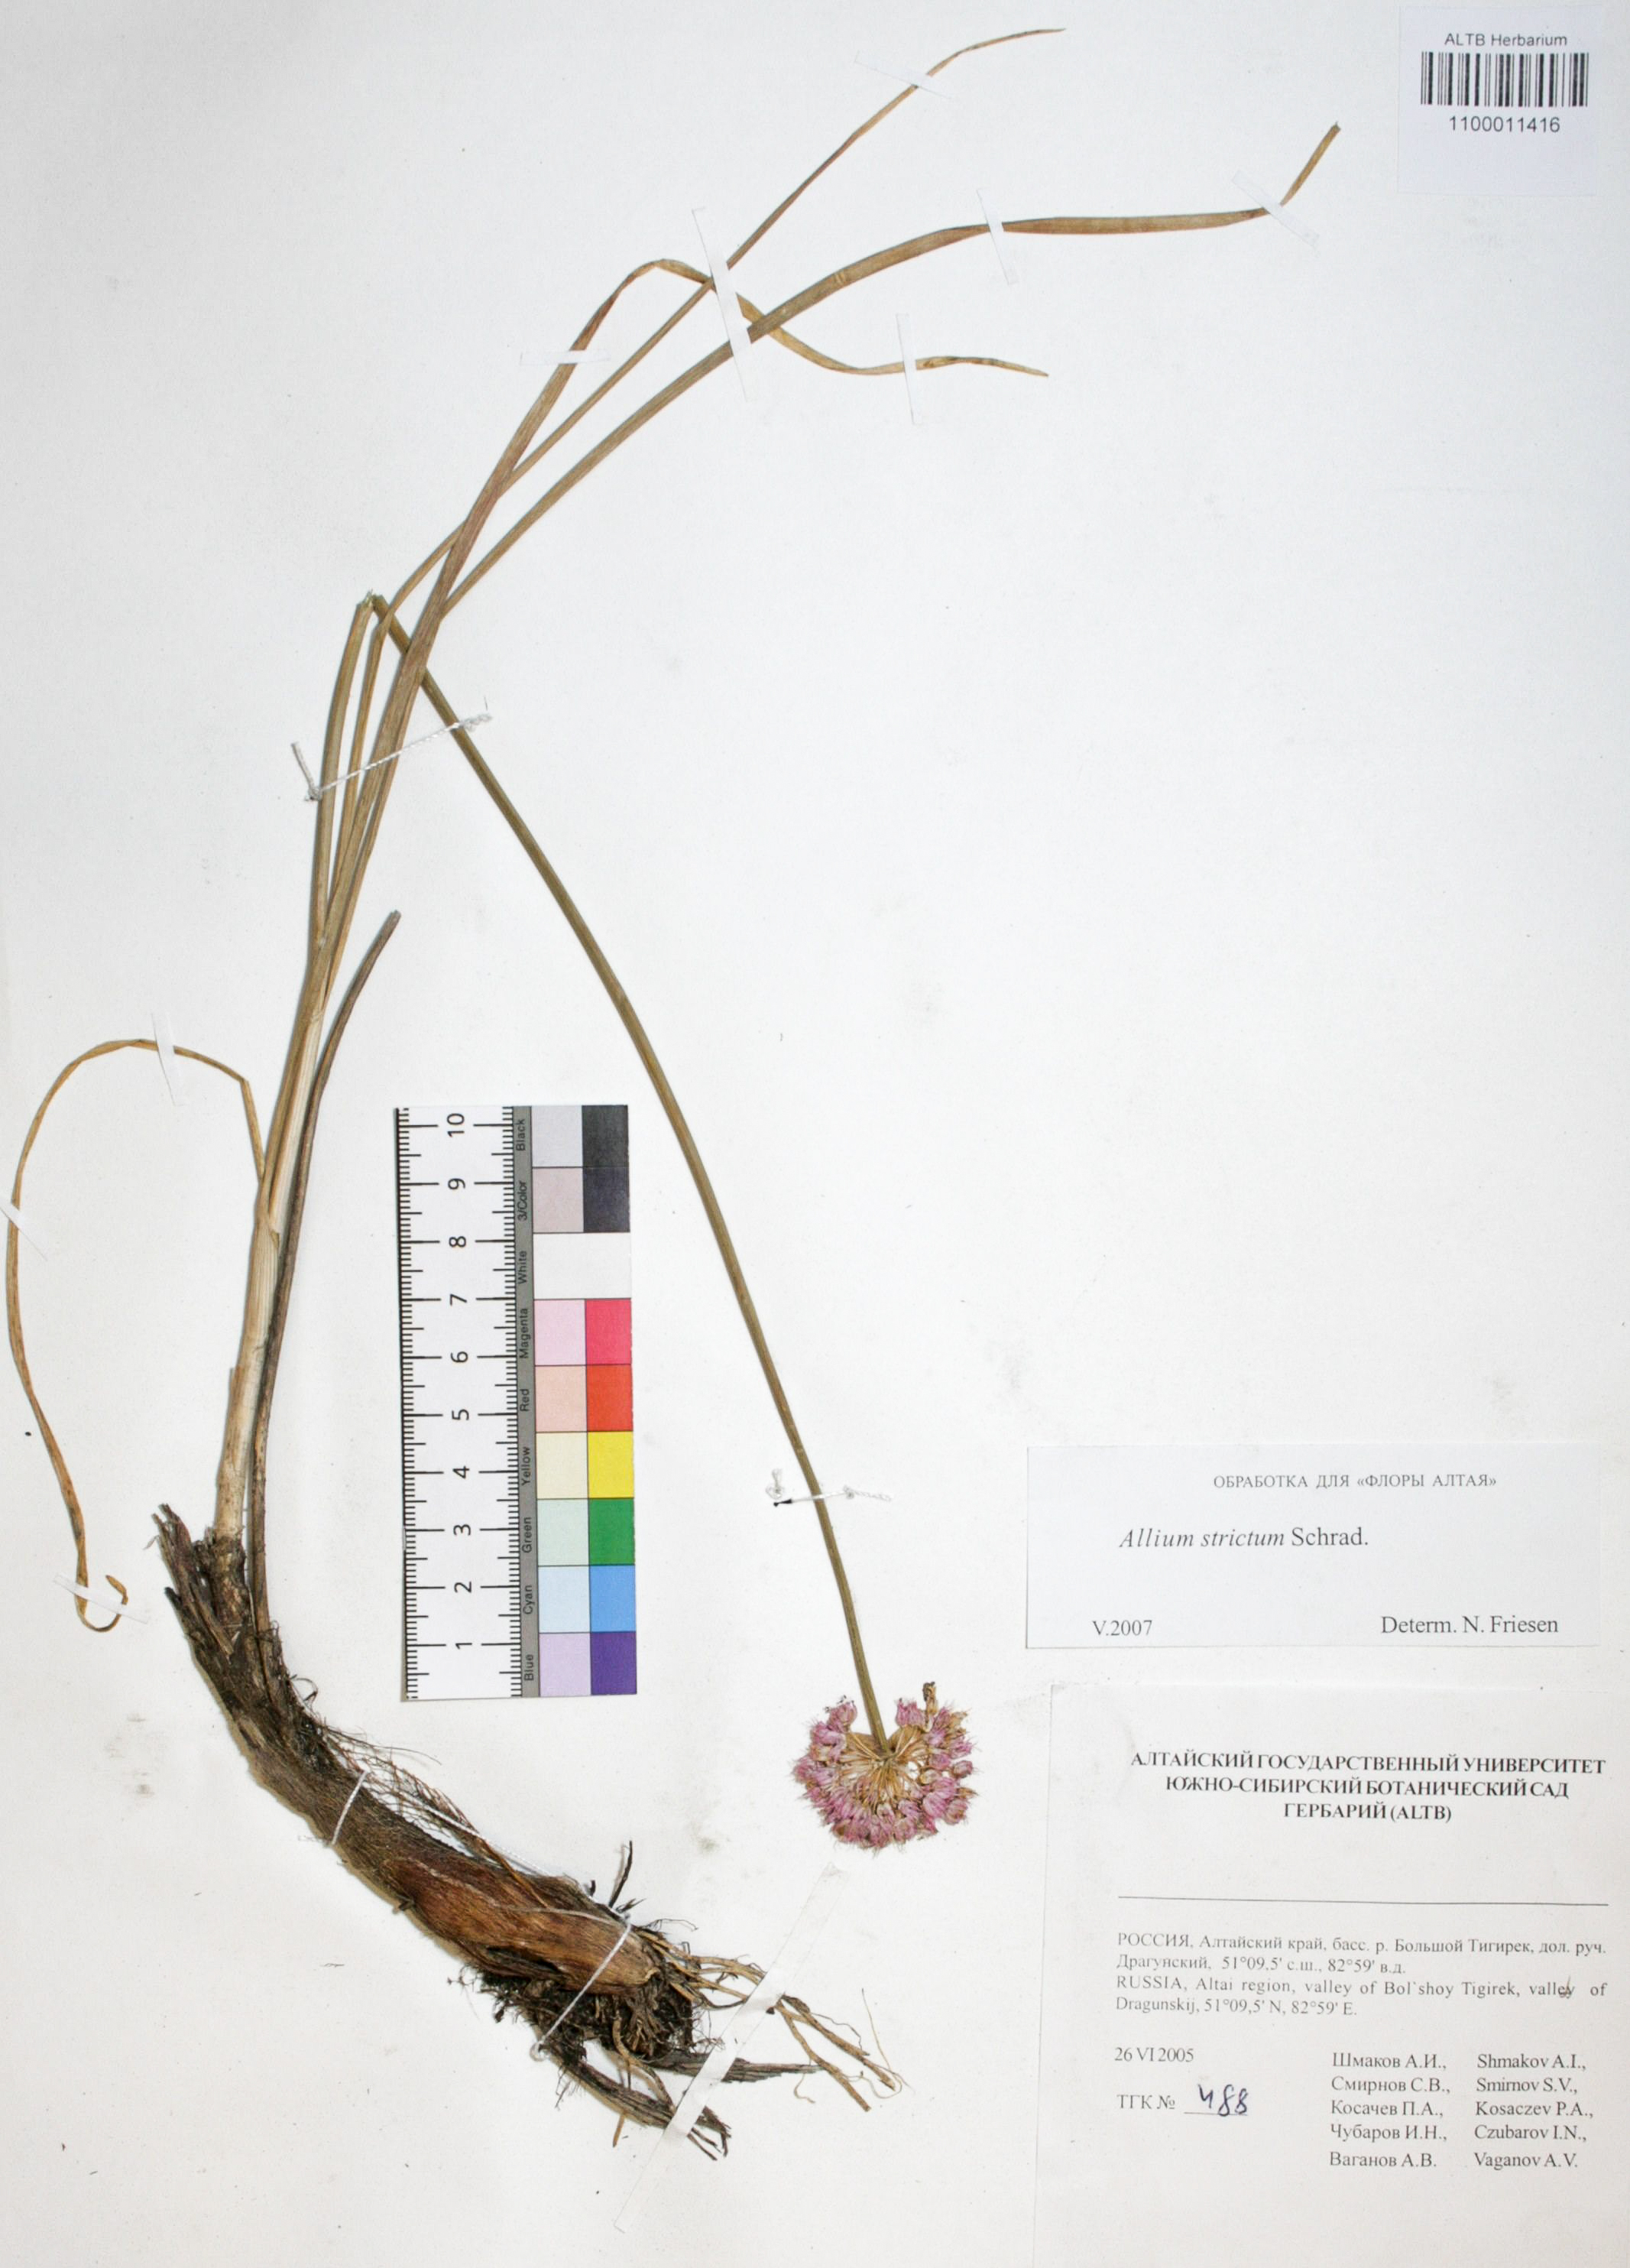 Allium strictum Schrad.